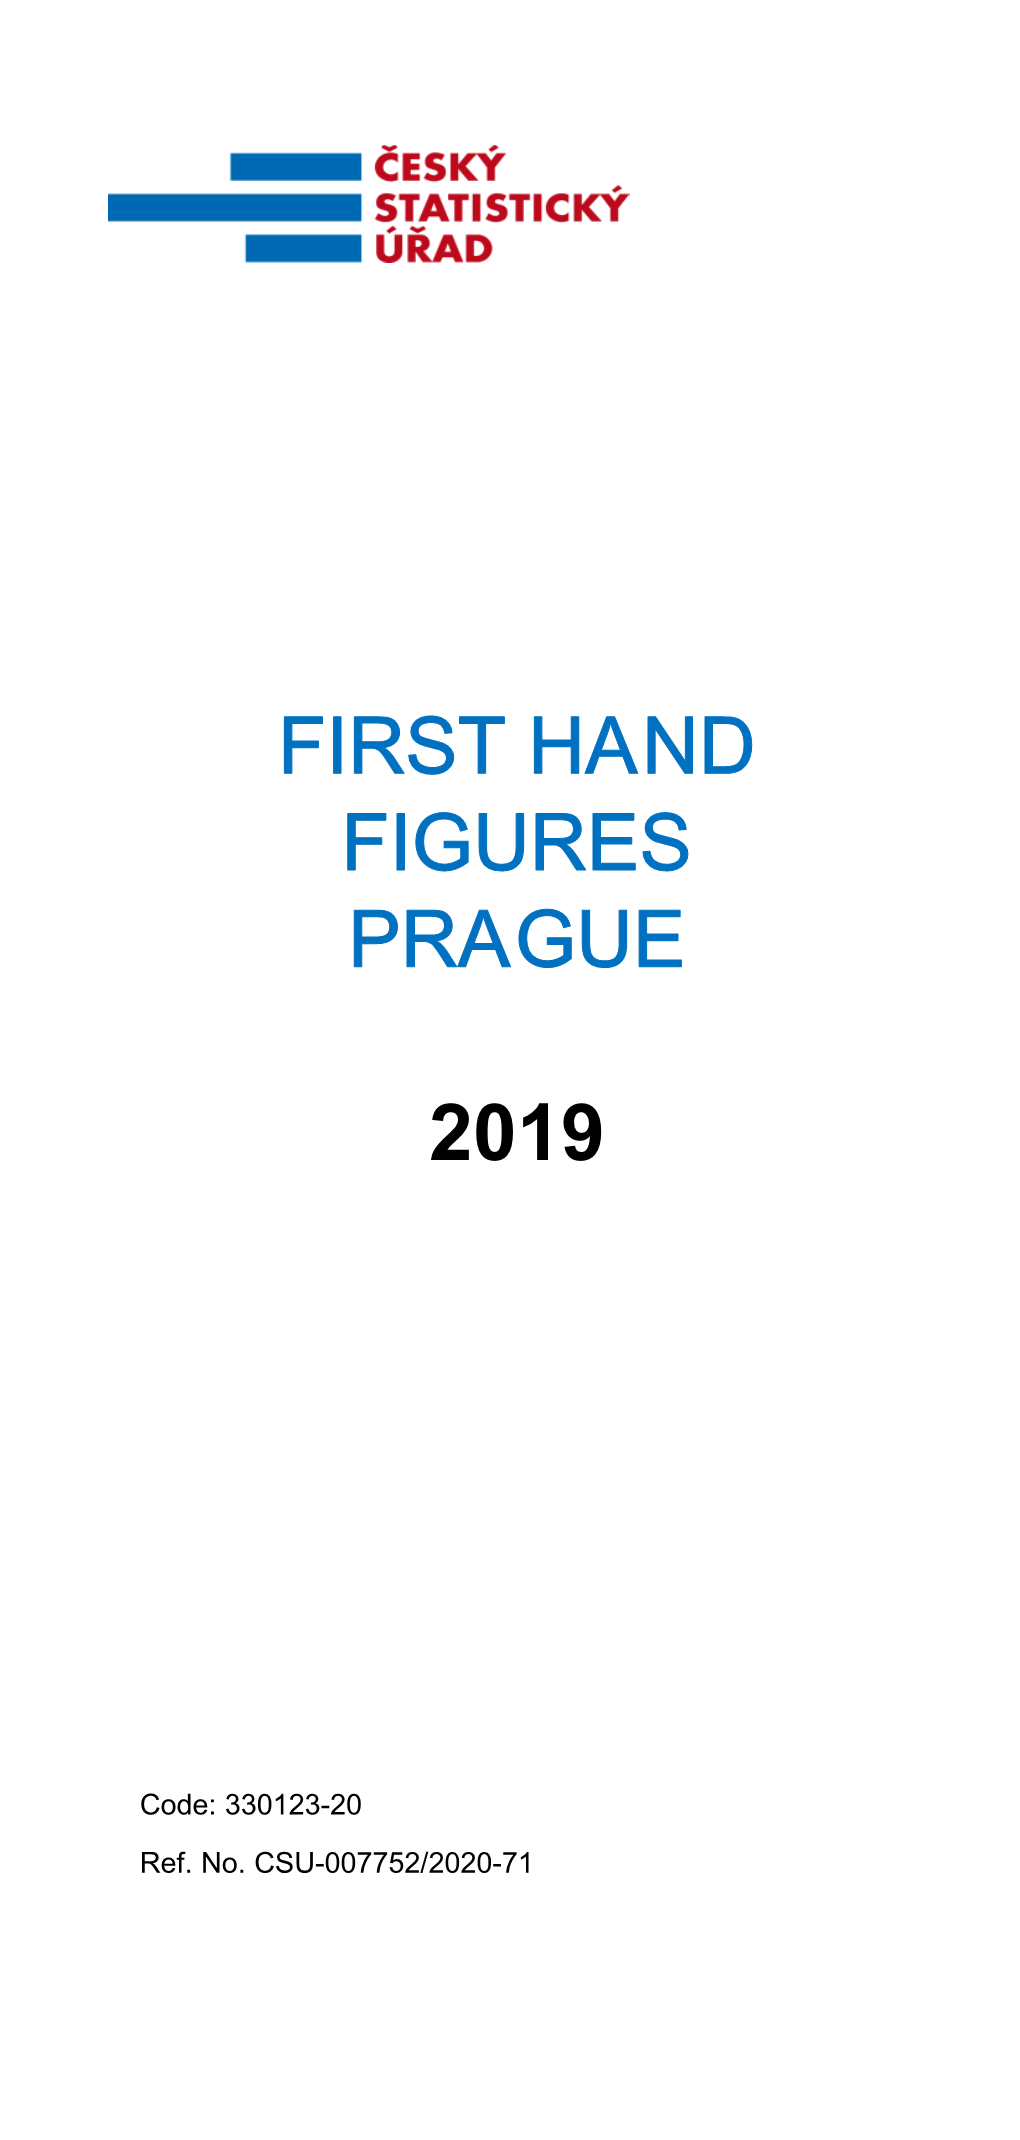 First Hand Prague 2019 Figures